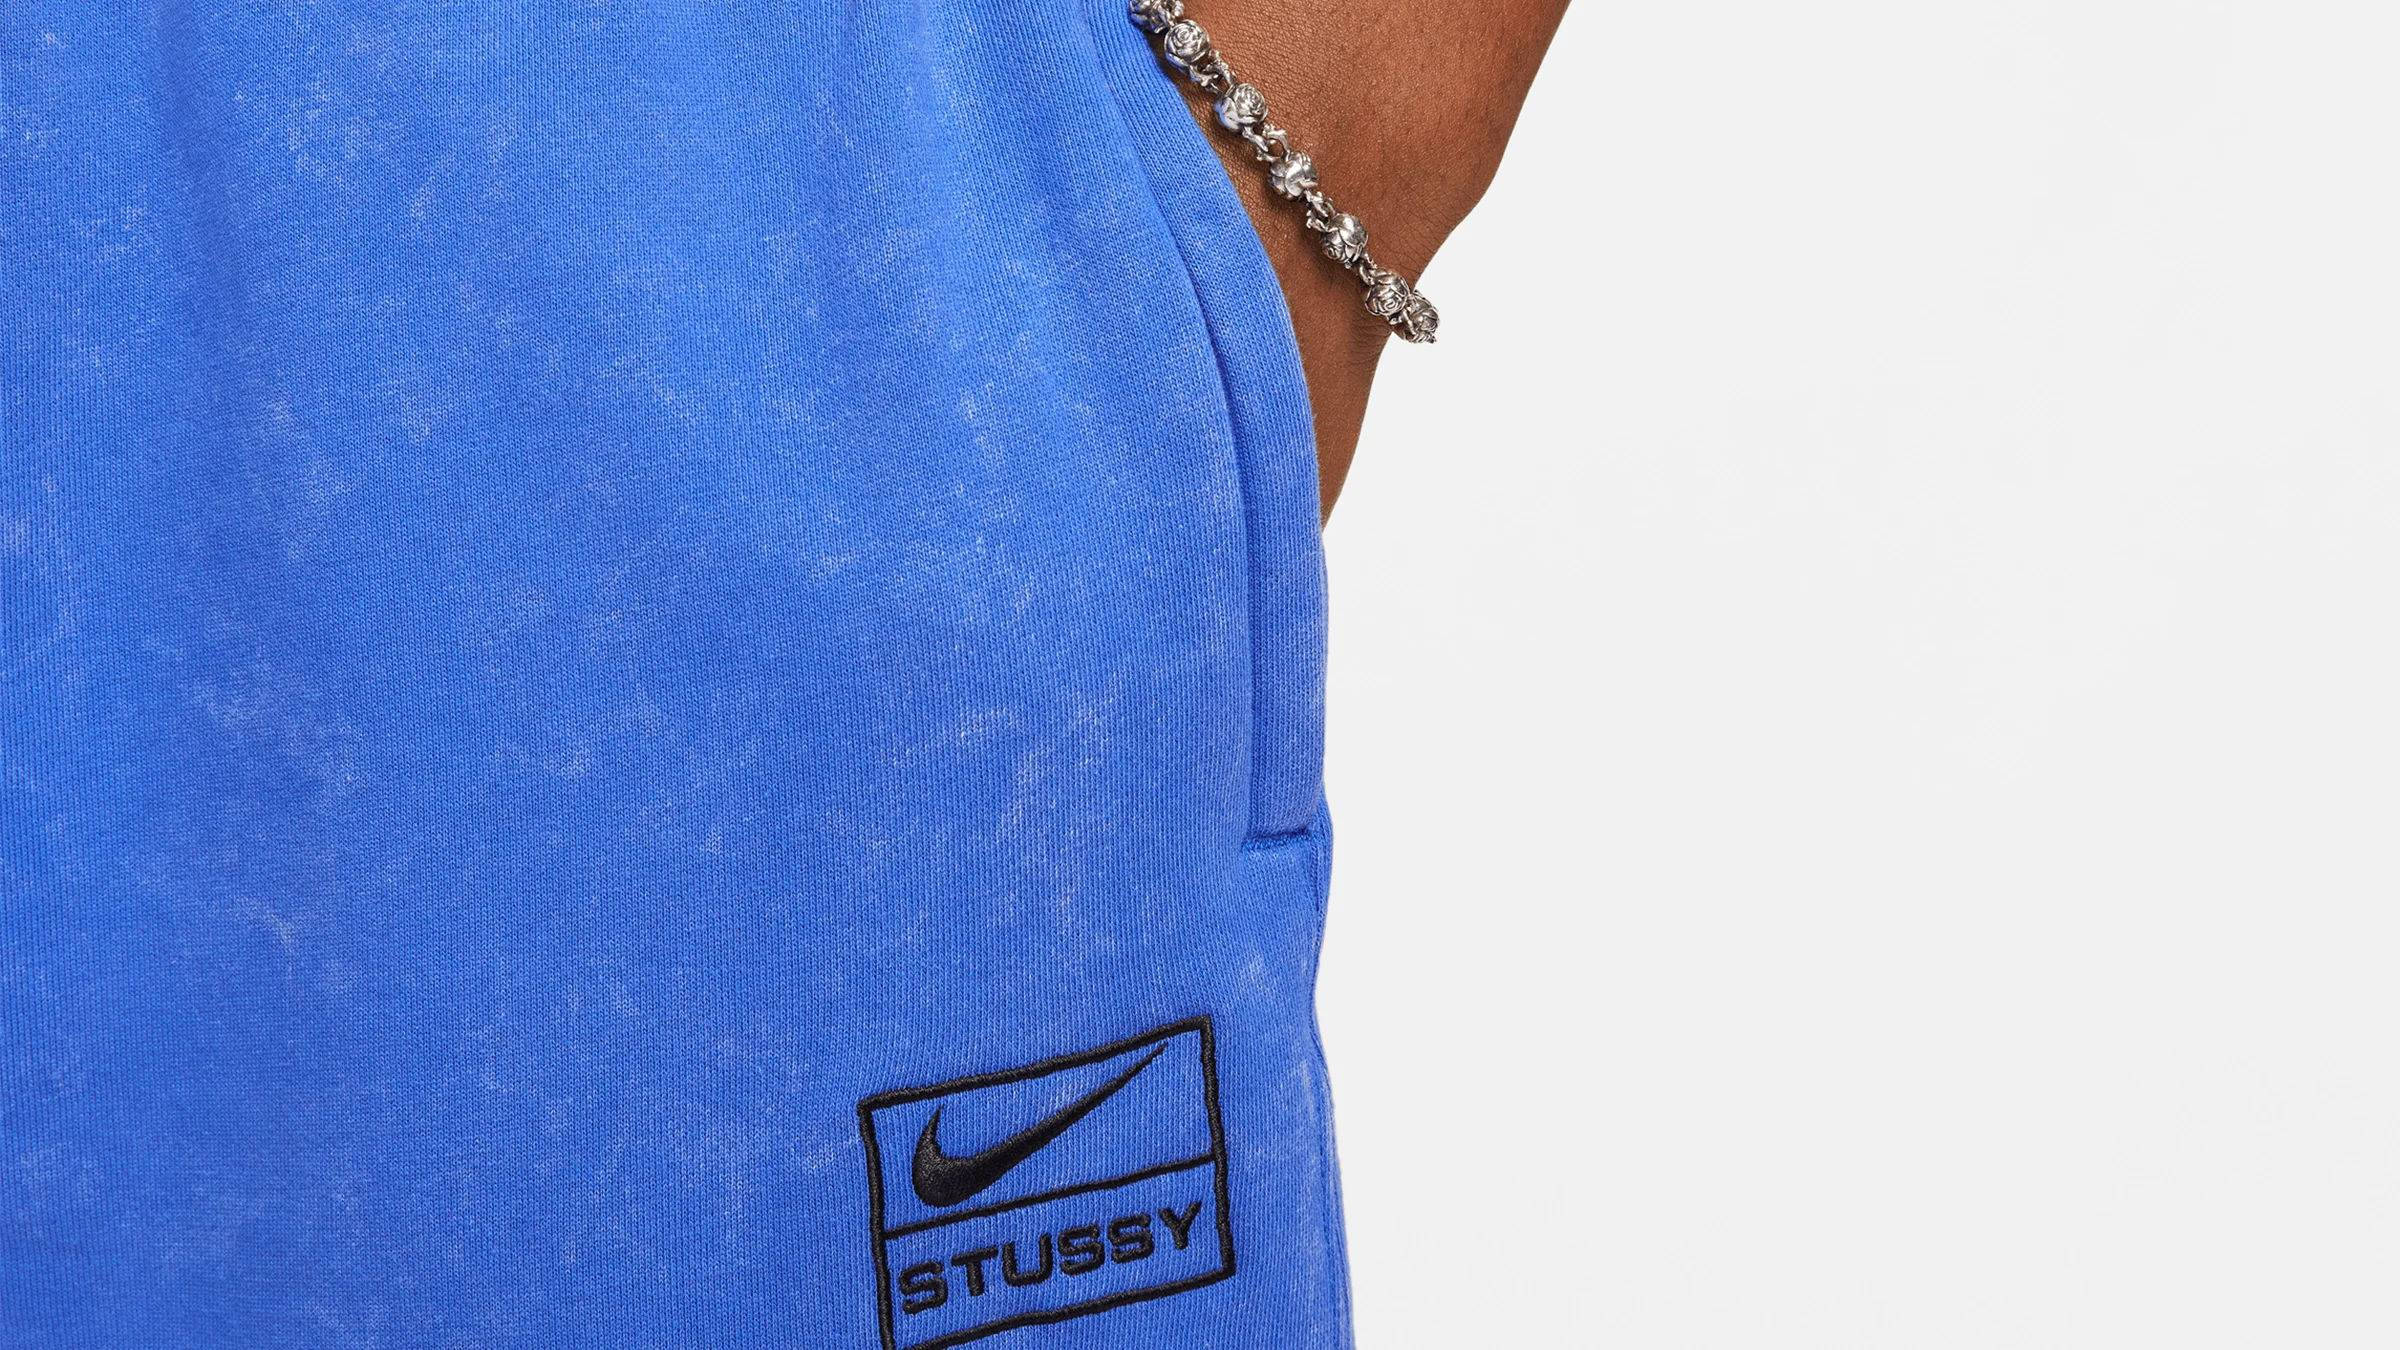 Nike x Stussy Acid Wash Pant